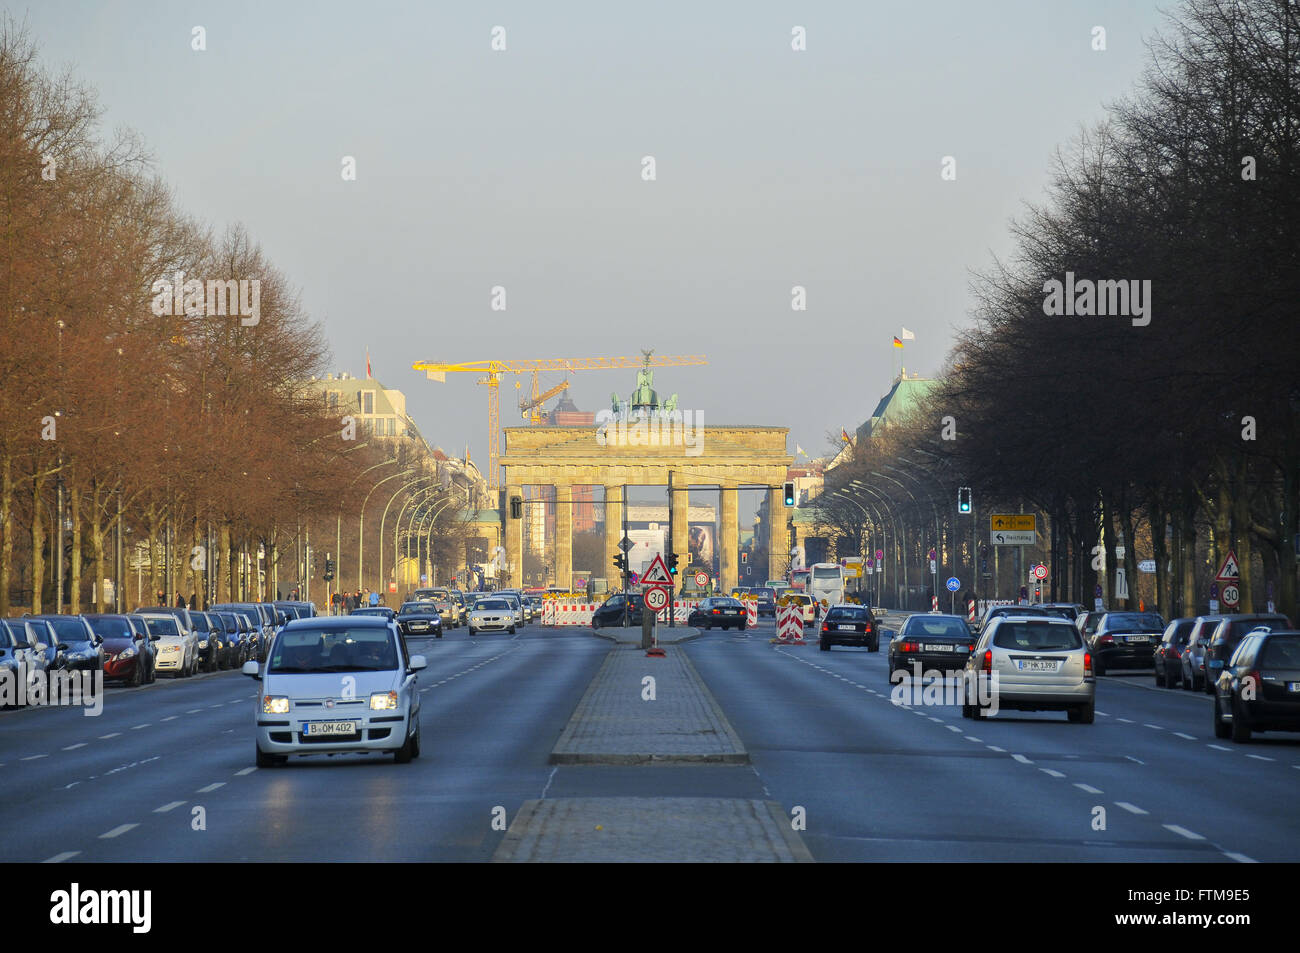 Stabe des 17 Juni - Avenue June 17 to fund the Brandenburg Gate Stock Photo